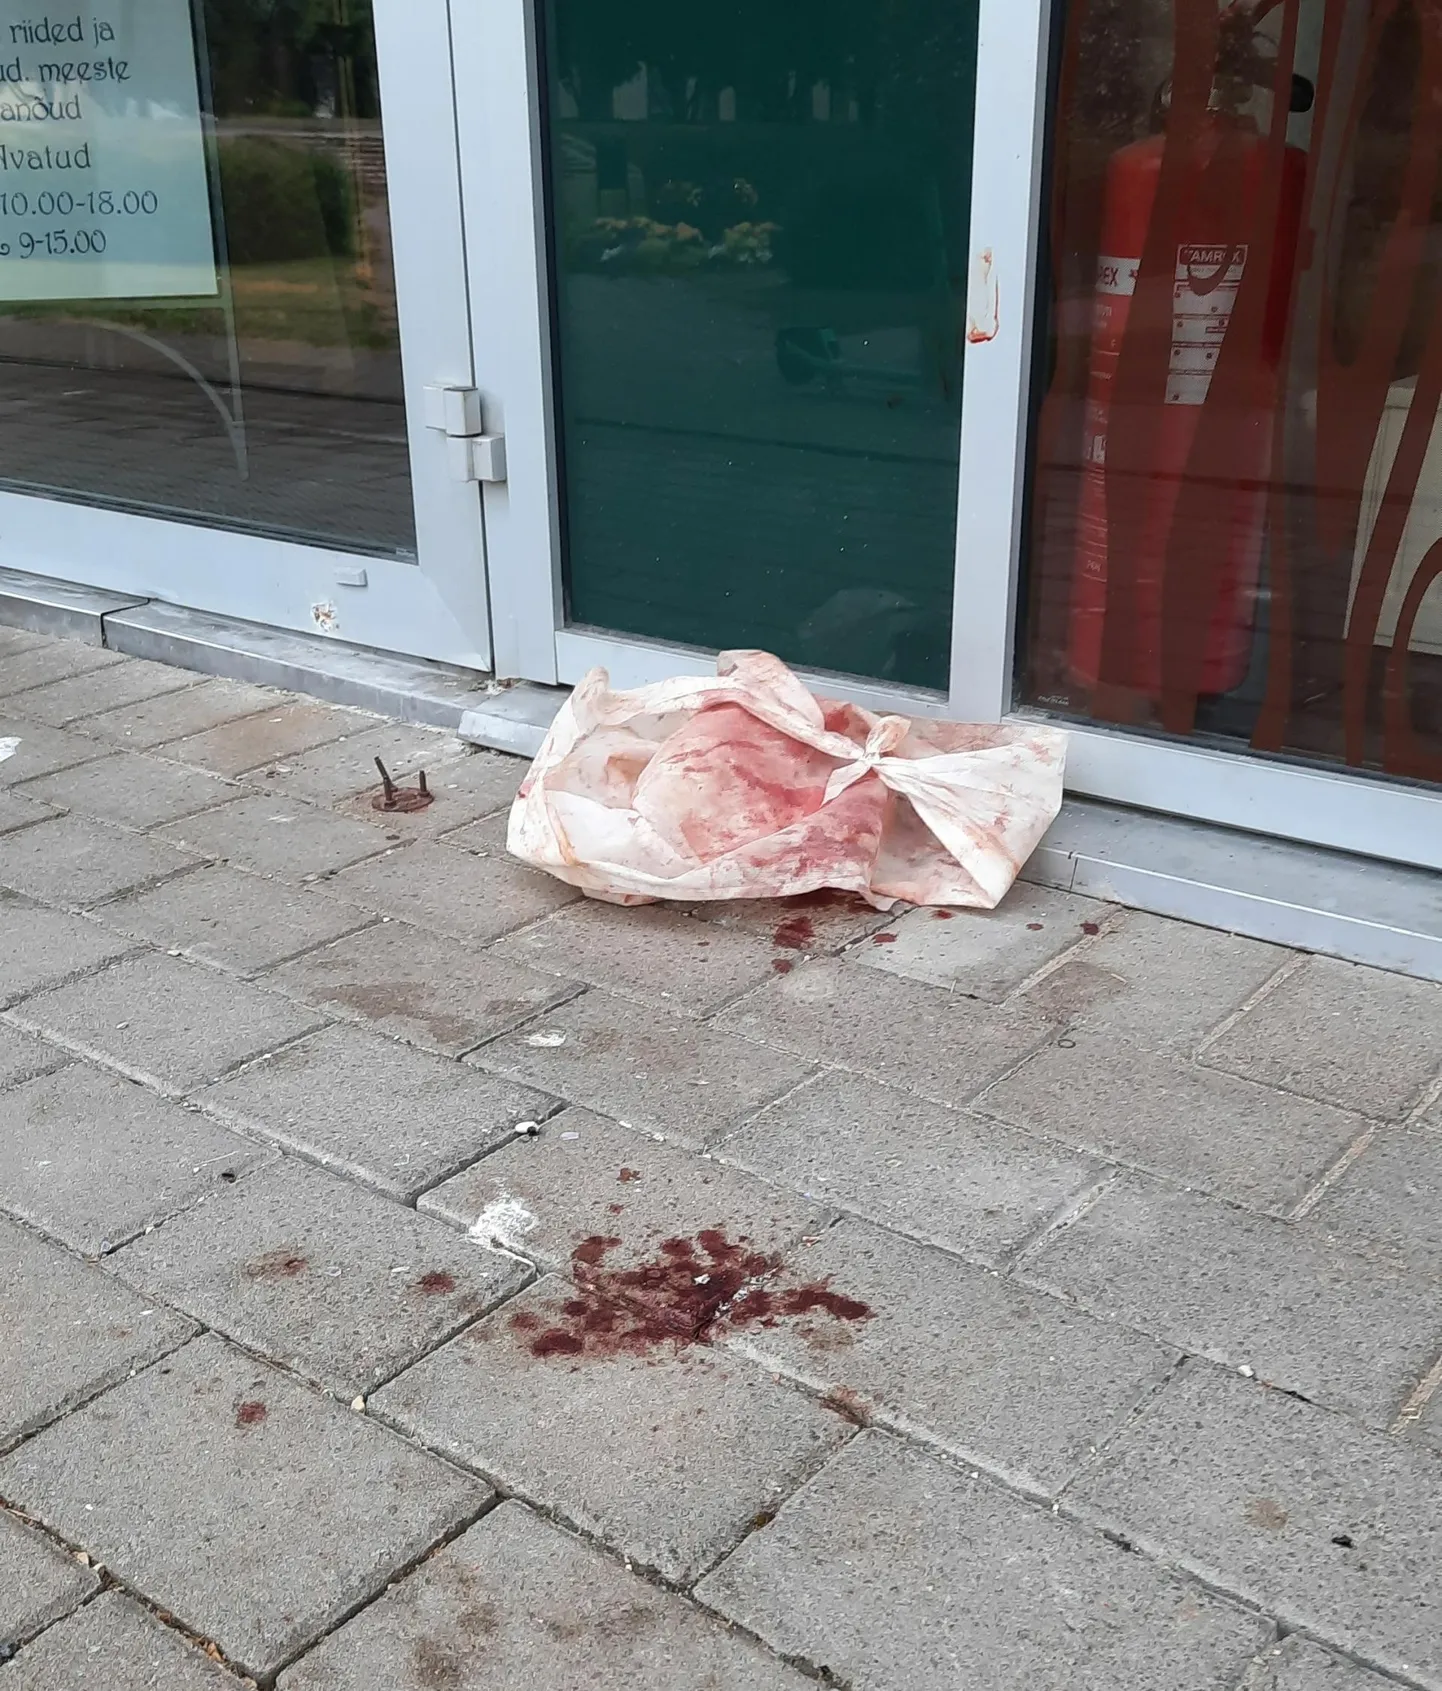 Hommikul võis Viljandis Tartu tänaval Sakala toimetuse välisukse ees näha vereloiku ja verist sidet ning verepritsmeid olid täis ka aknad ja uks.